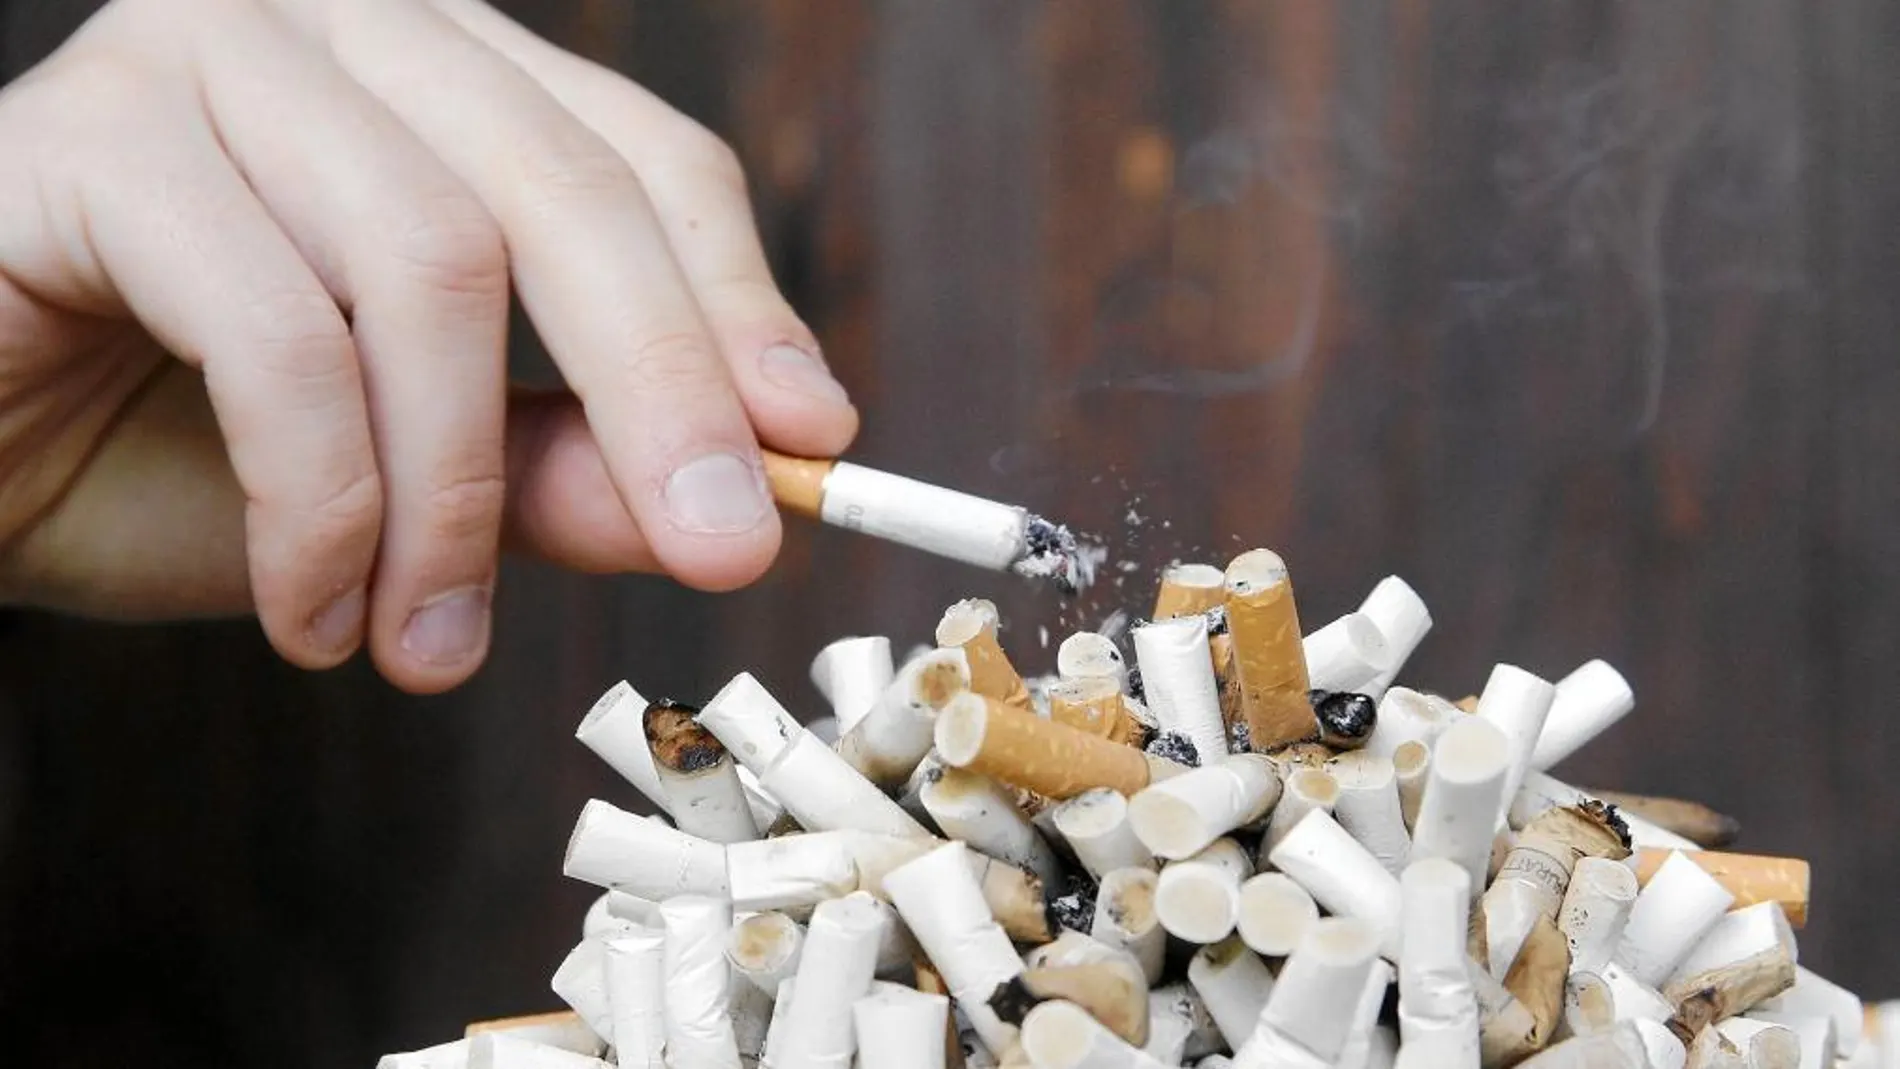 60.000 españoles pierden la vida cada año por el tabaco, según sociedades sanitarias